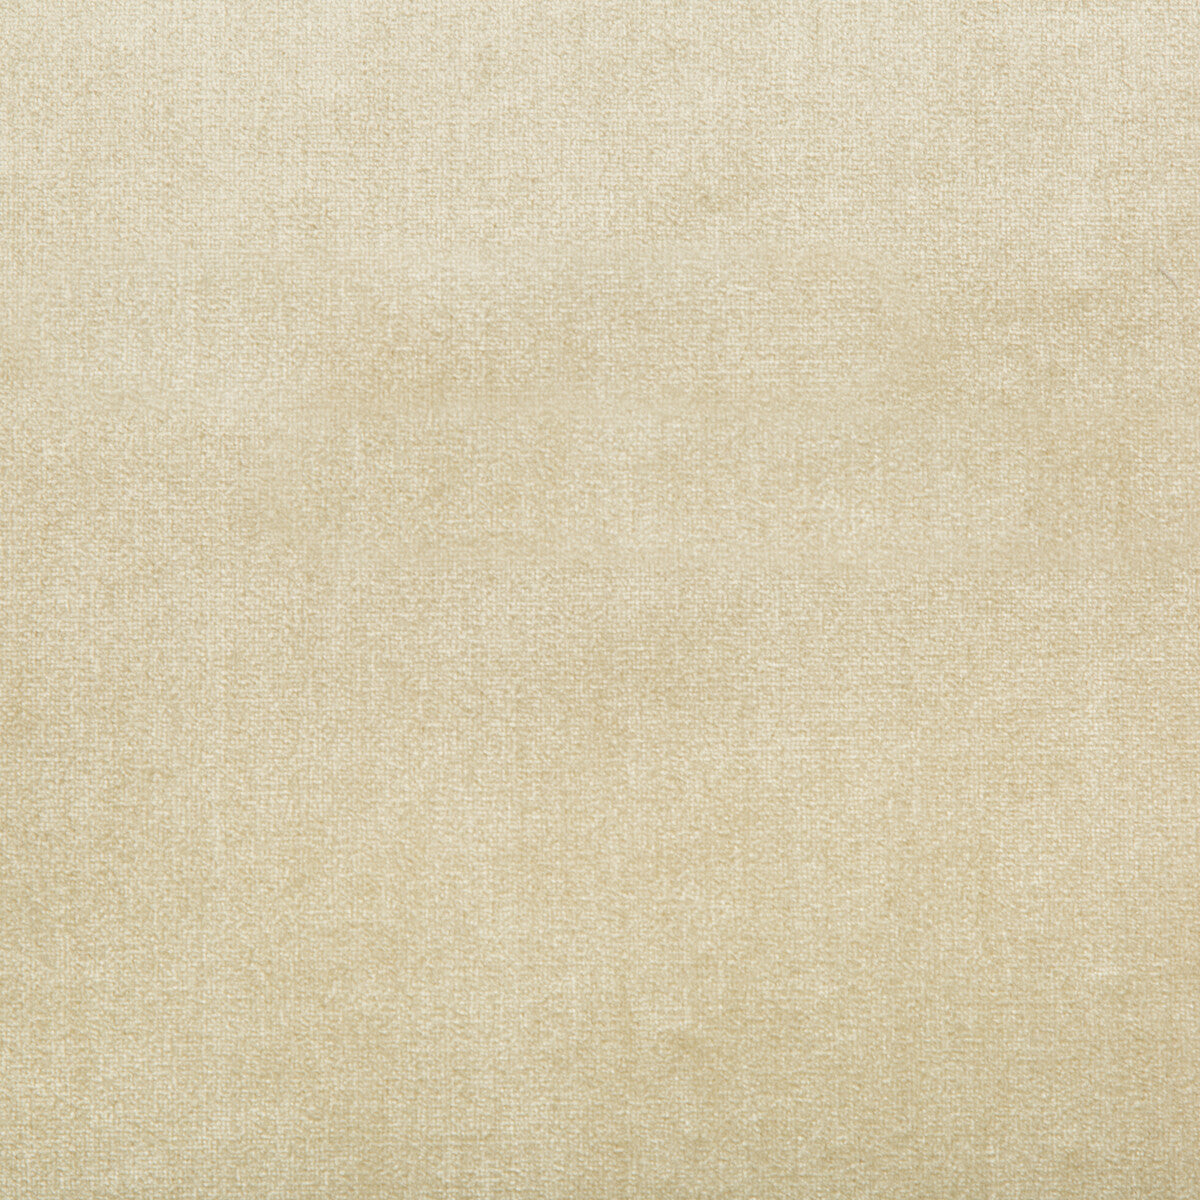 Duchess Velvet fabric in beige color - pattern 2016121.116.0 - by Lee Jofa